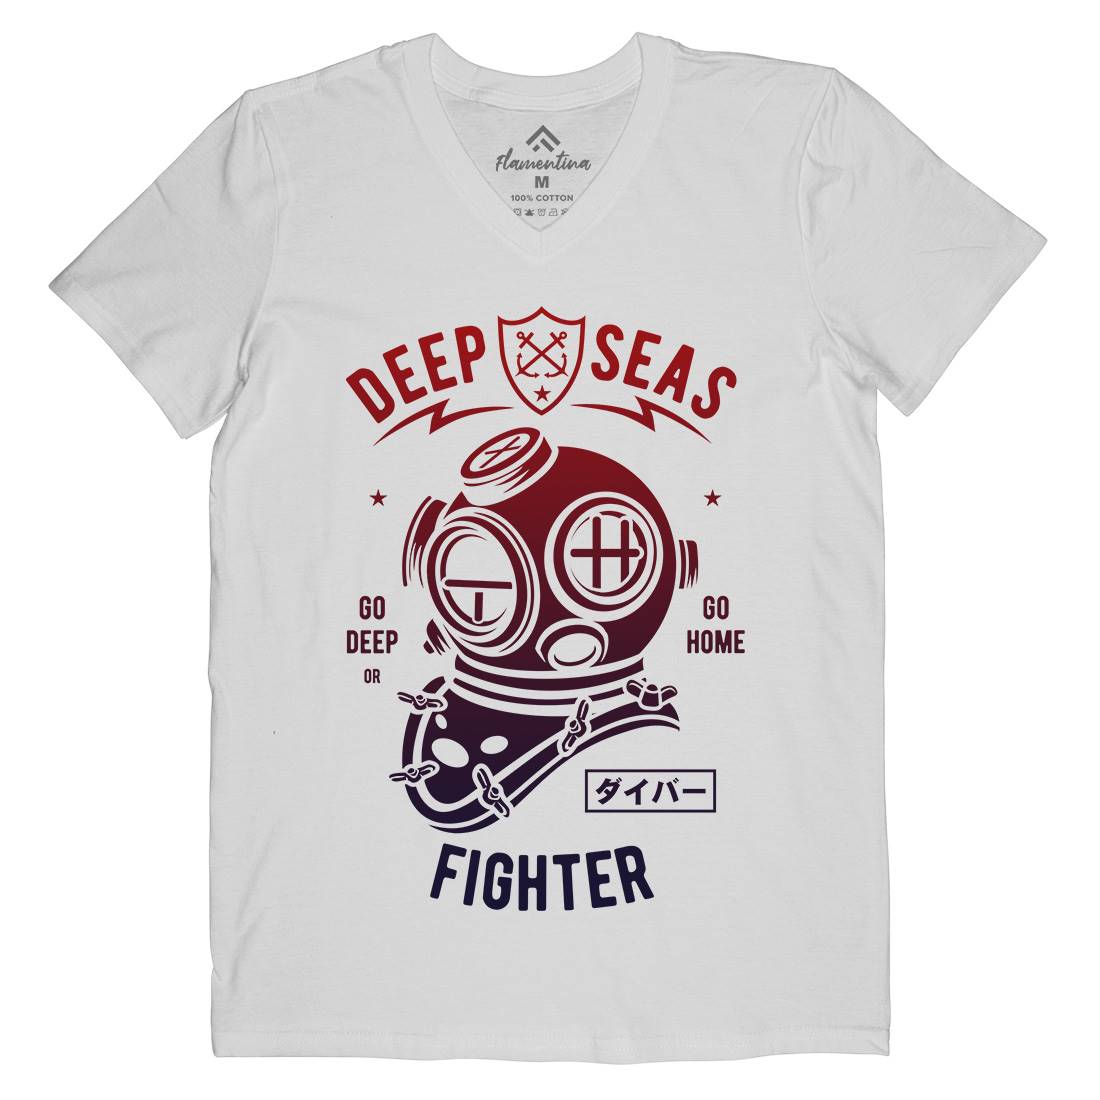 Deep Seas Fighter Mens V-Neck T-Shirt Navy A223